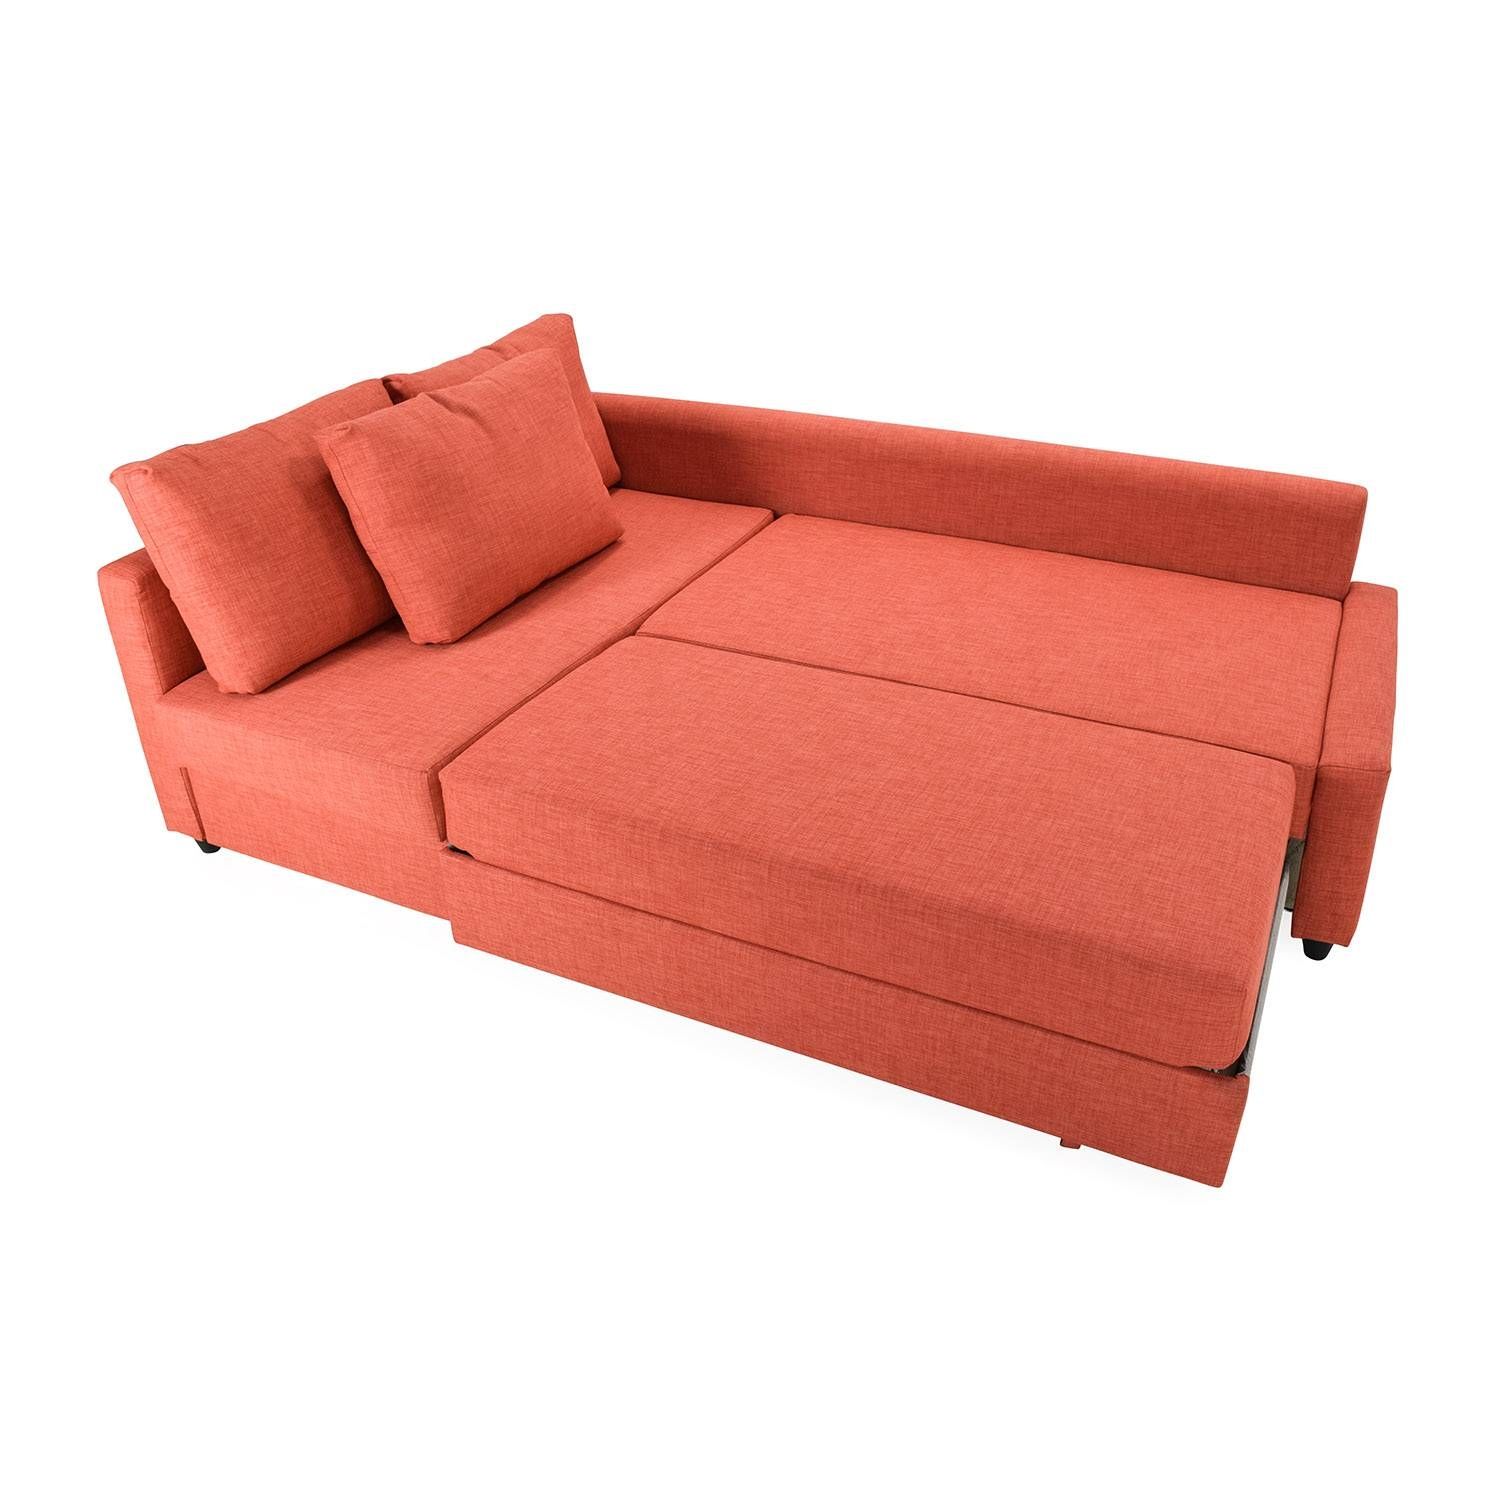 49% Off – Ikea Friheten Sofa Bed With Chaise / Sofas Throughout Orange Ikea Sofas (Photo 23 of 30)